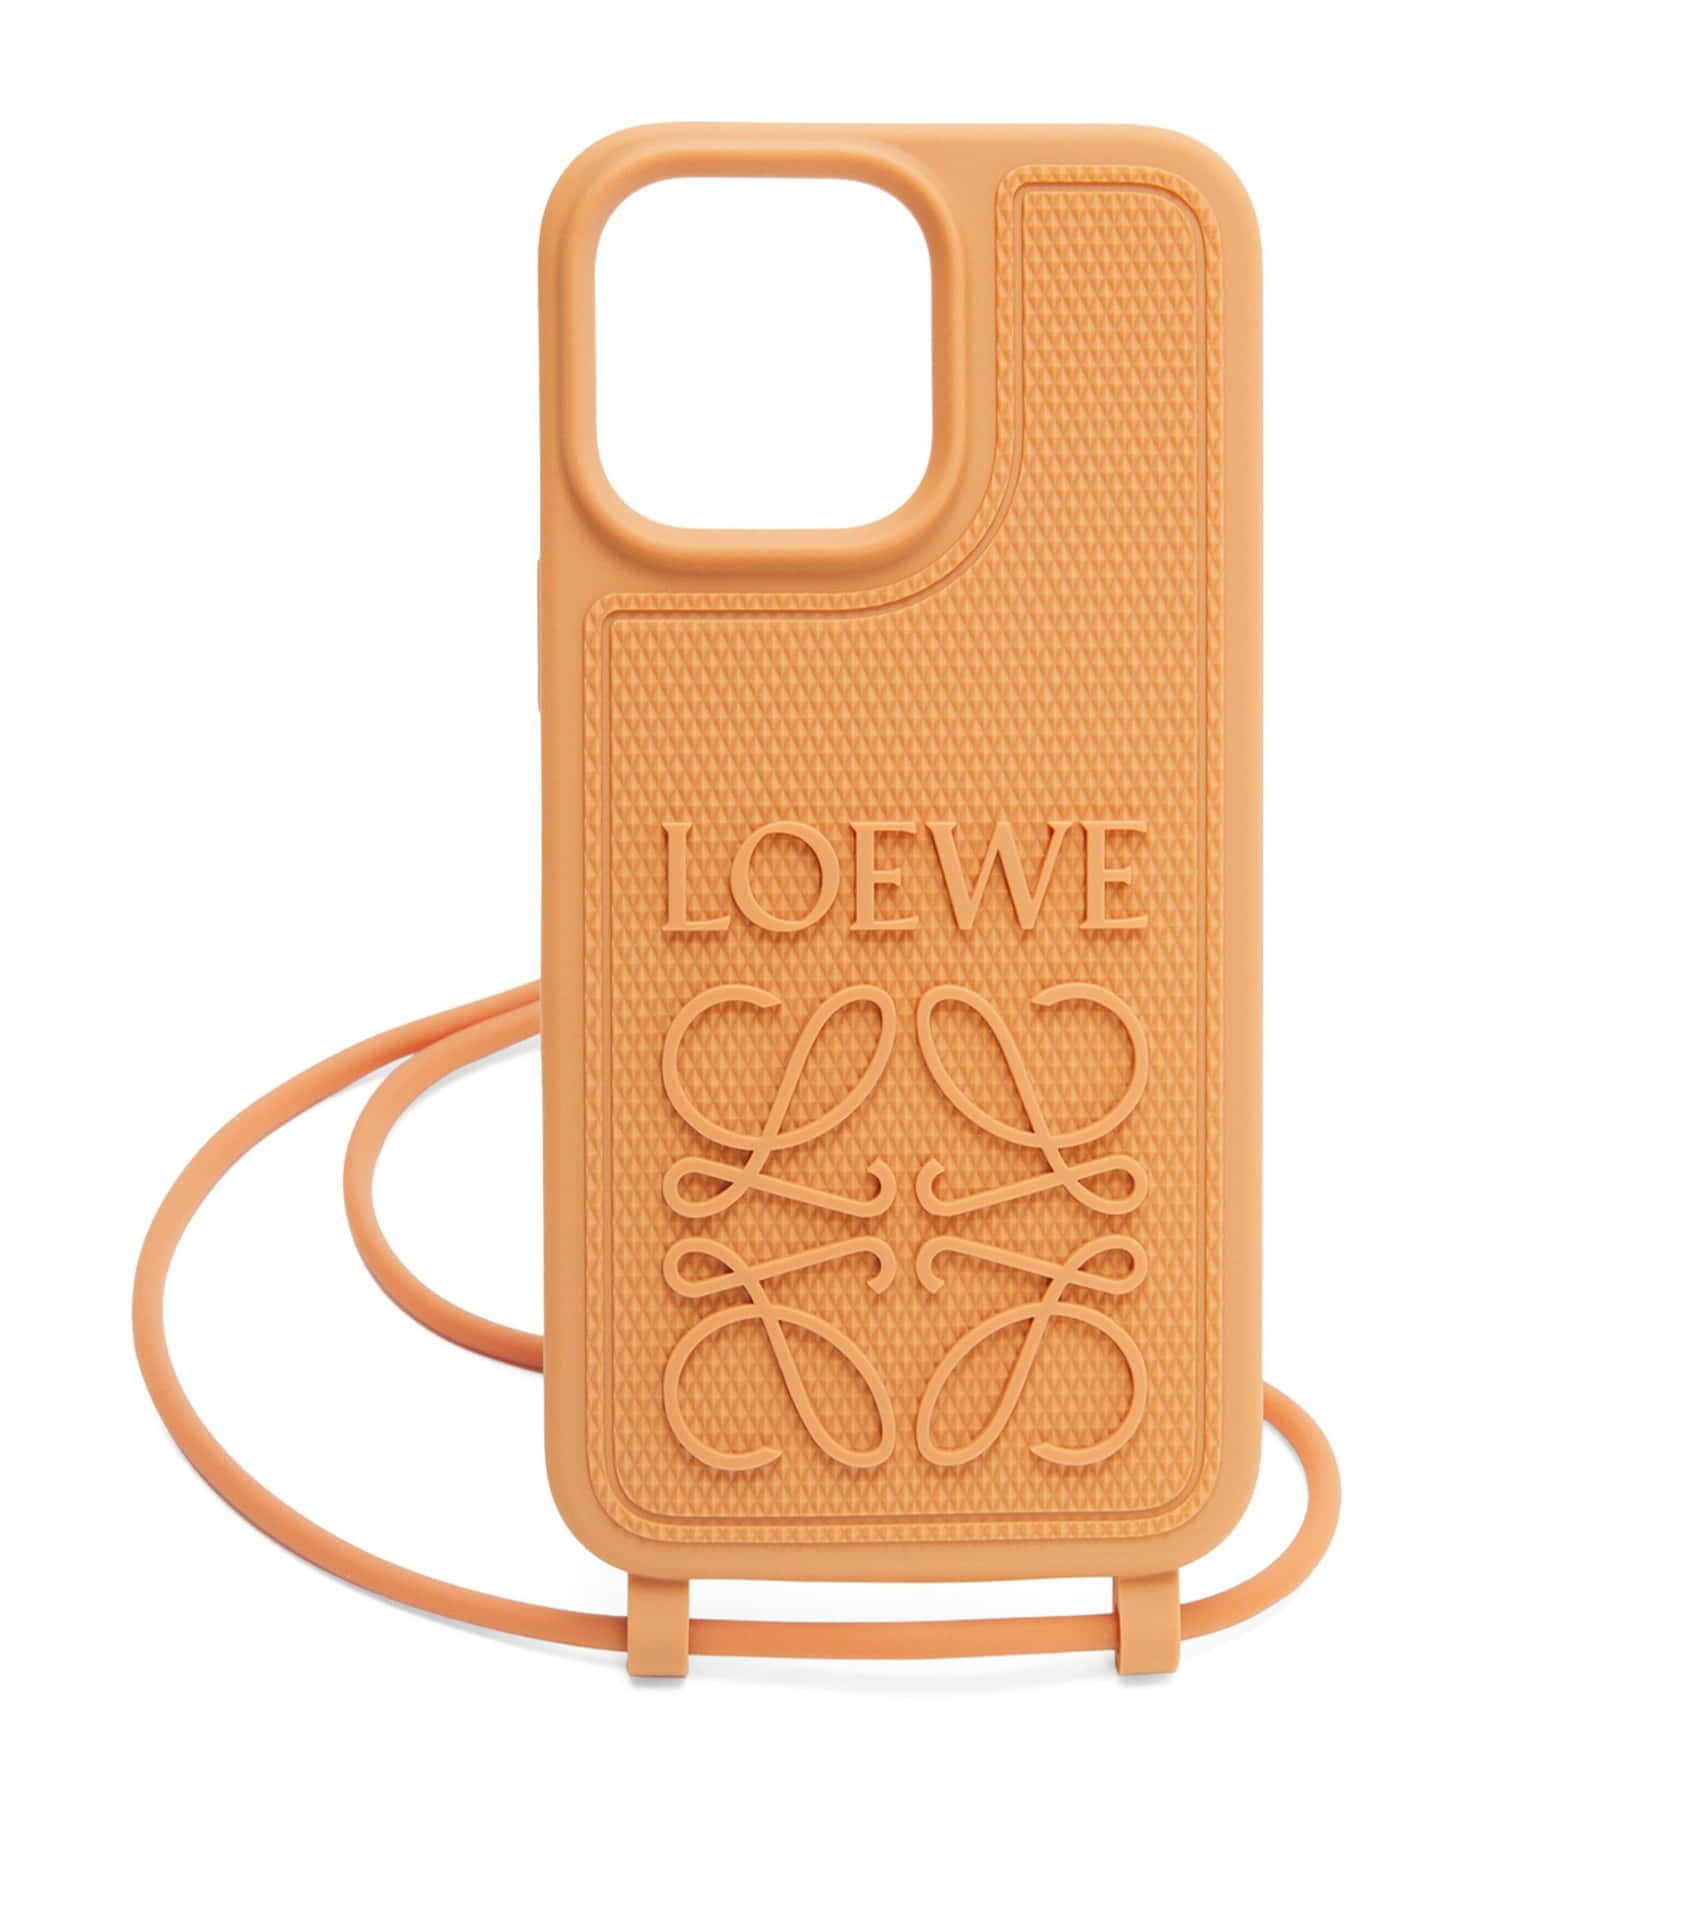 Fundade Teléfono Con Imagen Del Logotipo De Loewe.